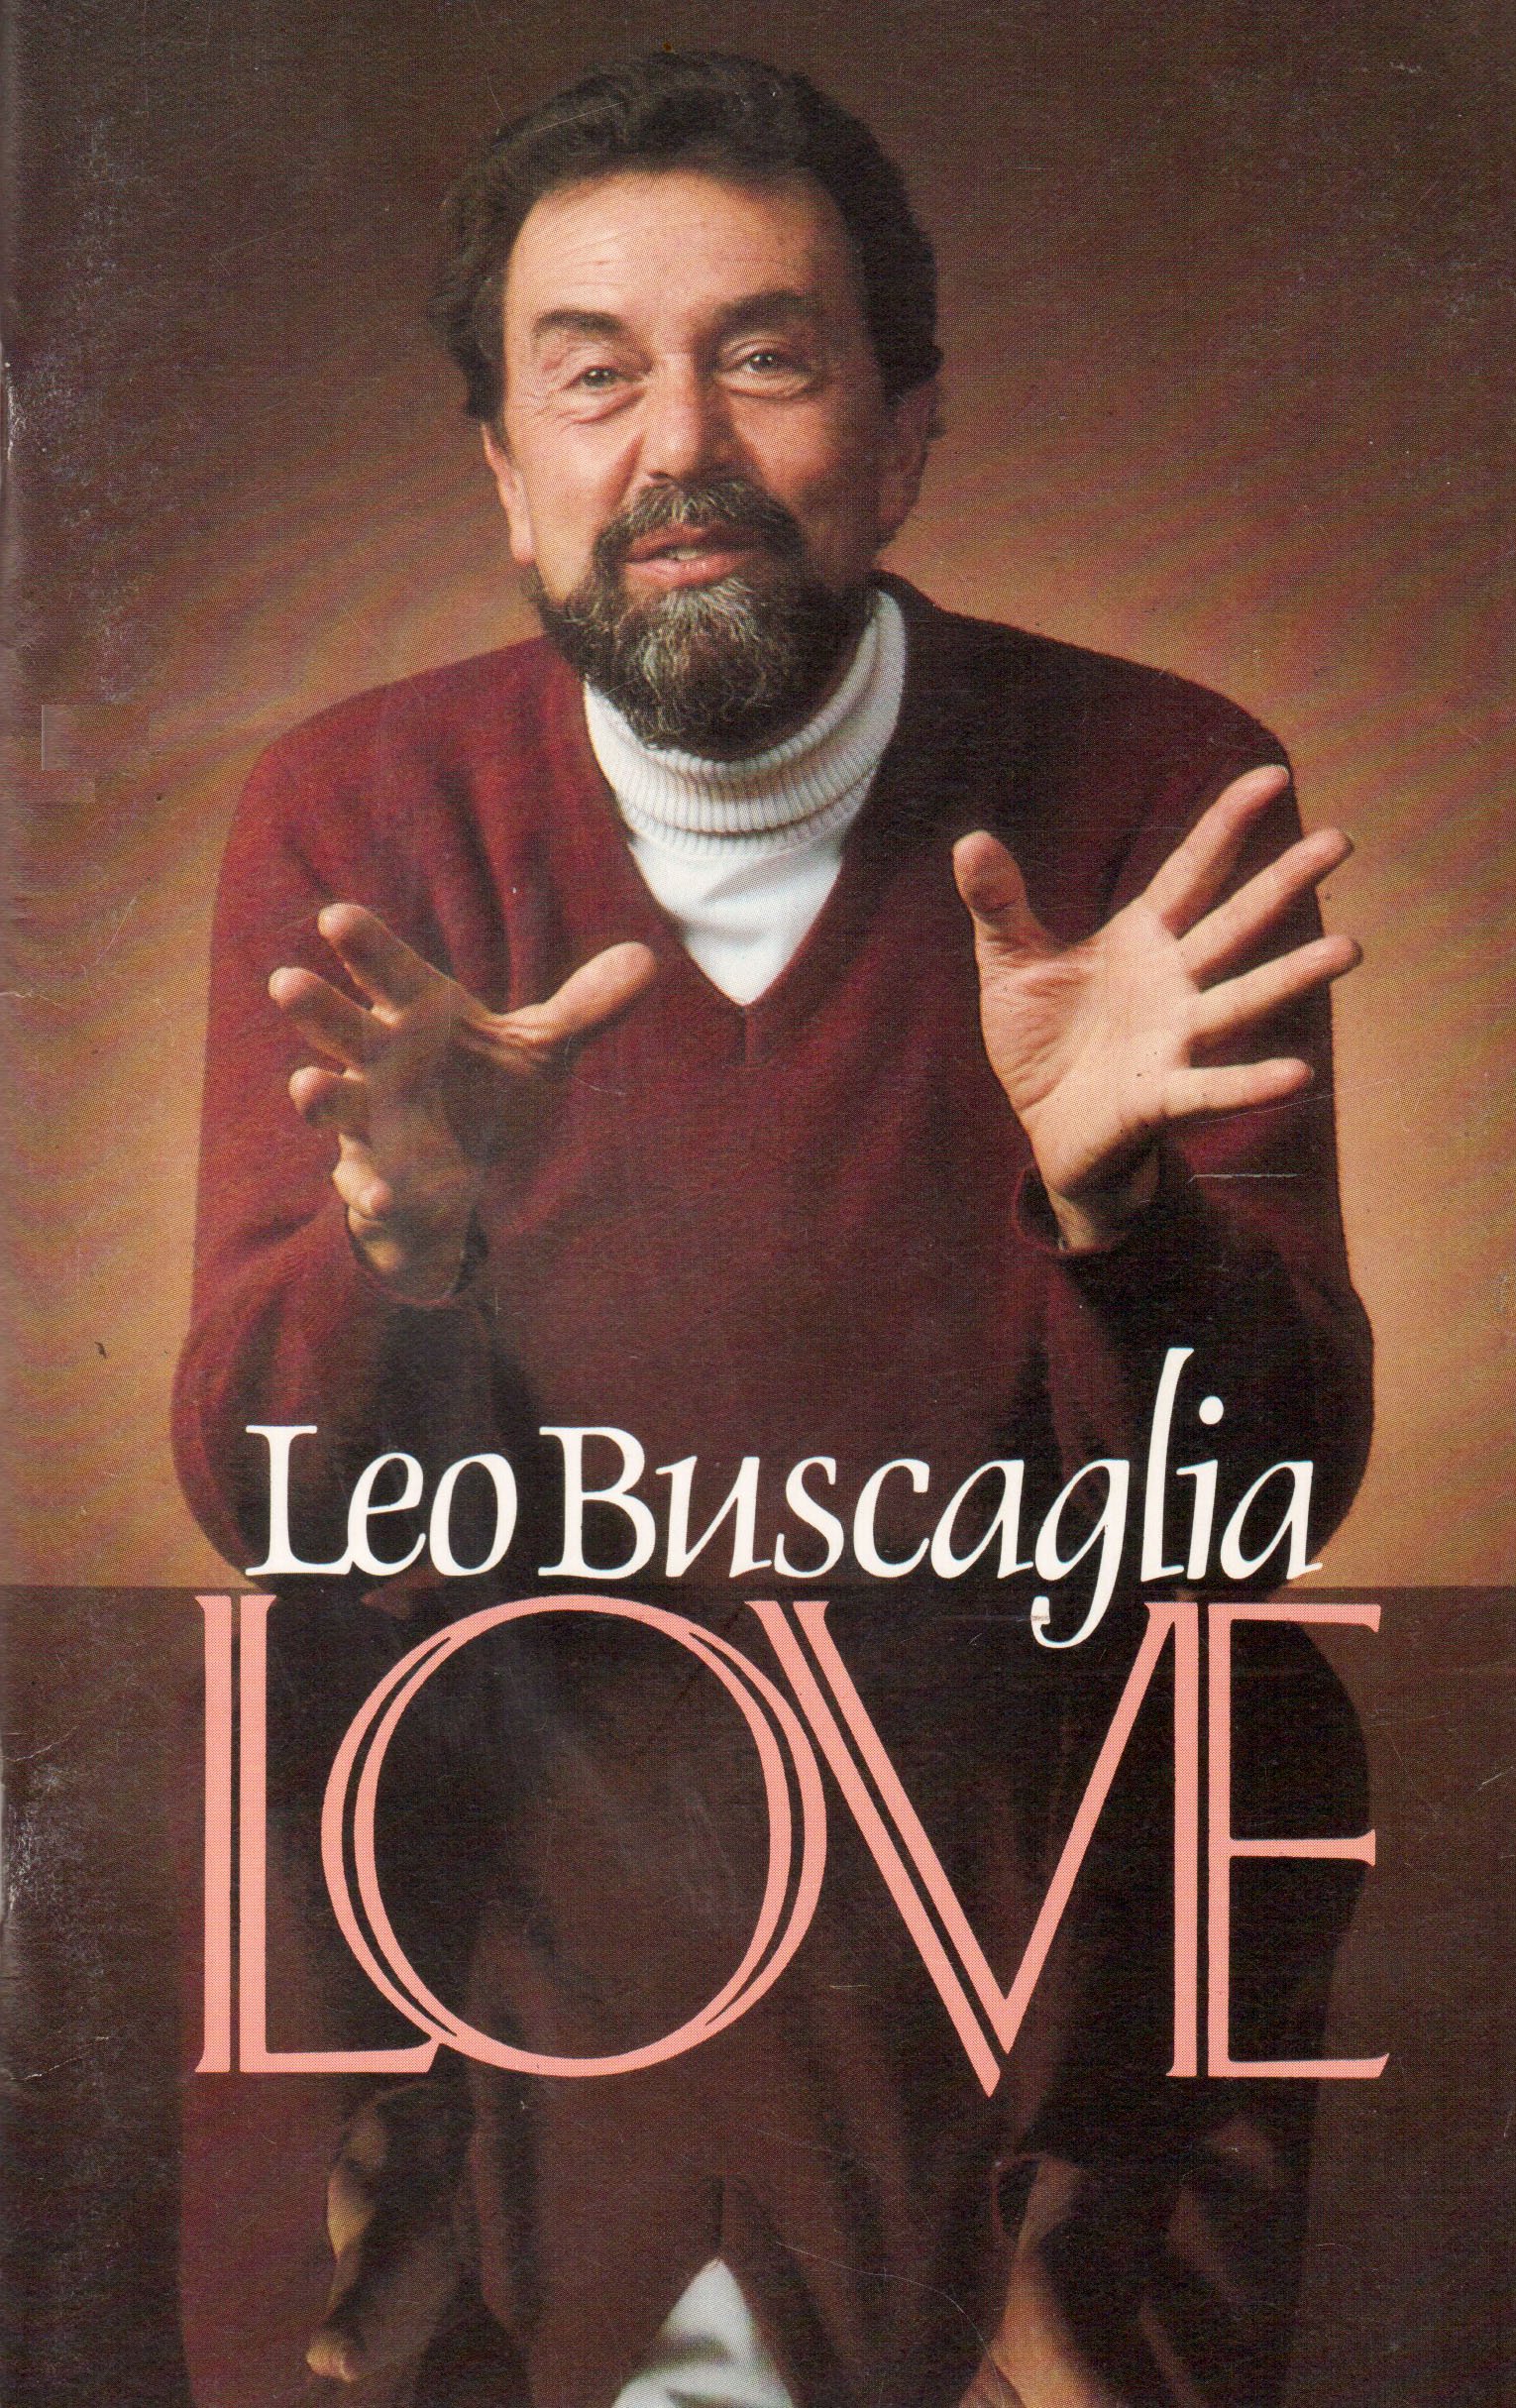 Leo Buscalia